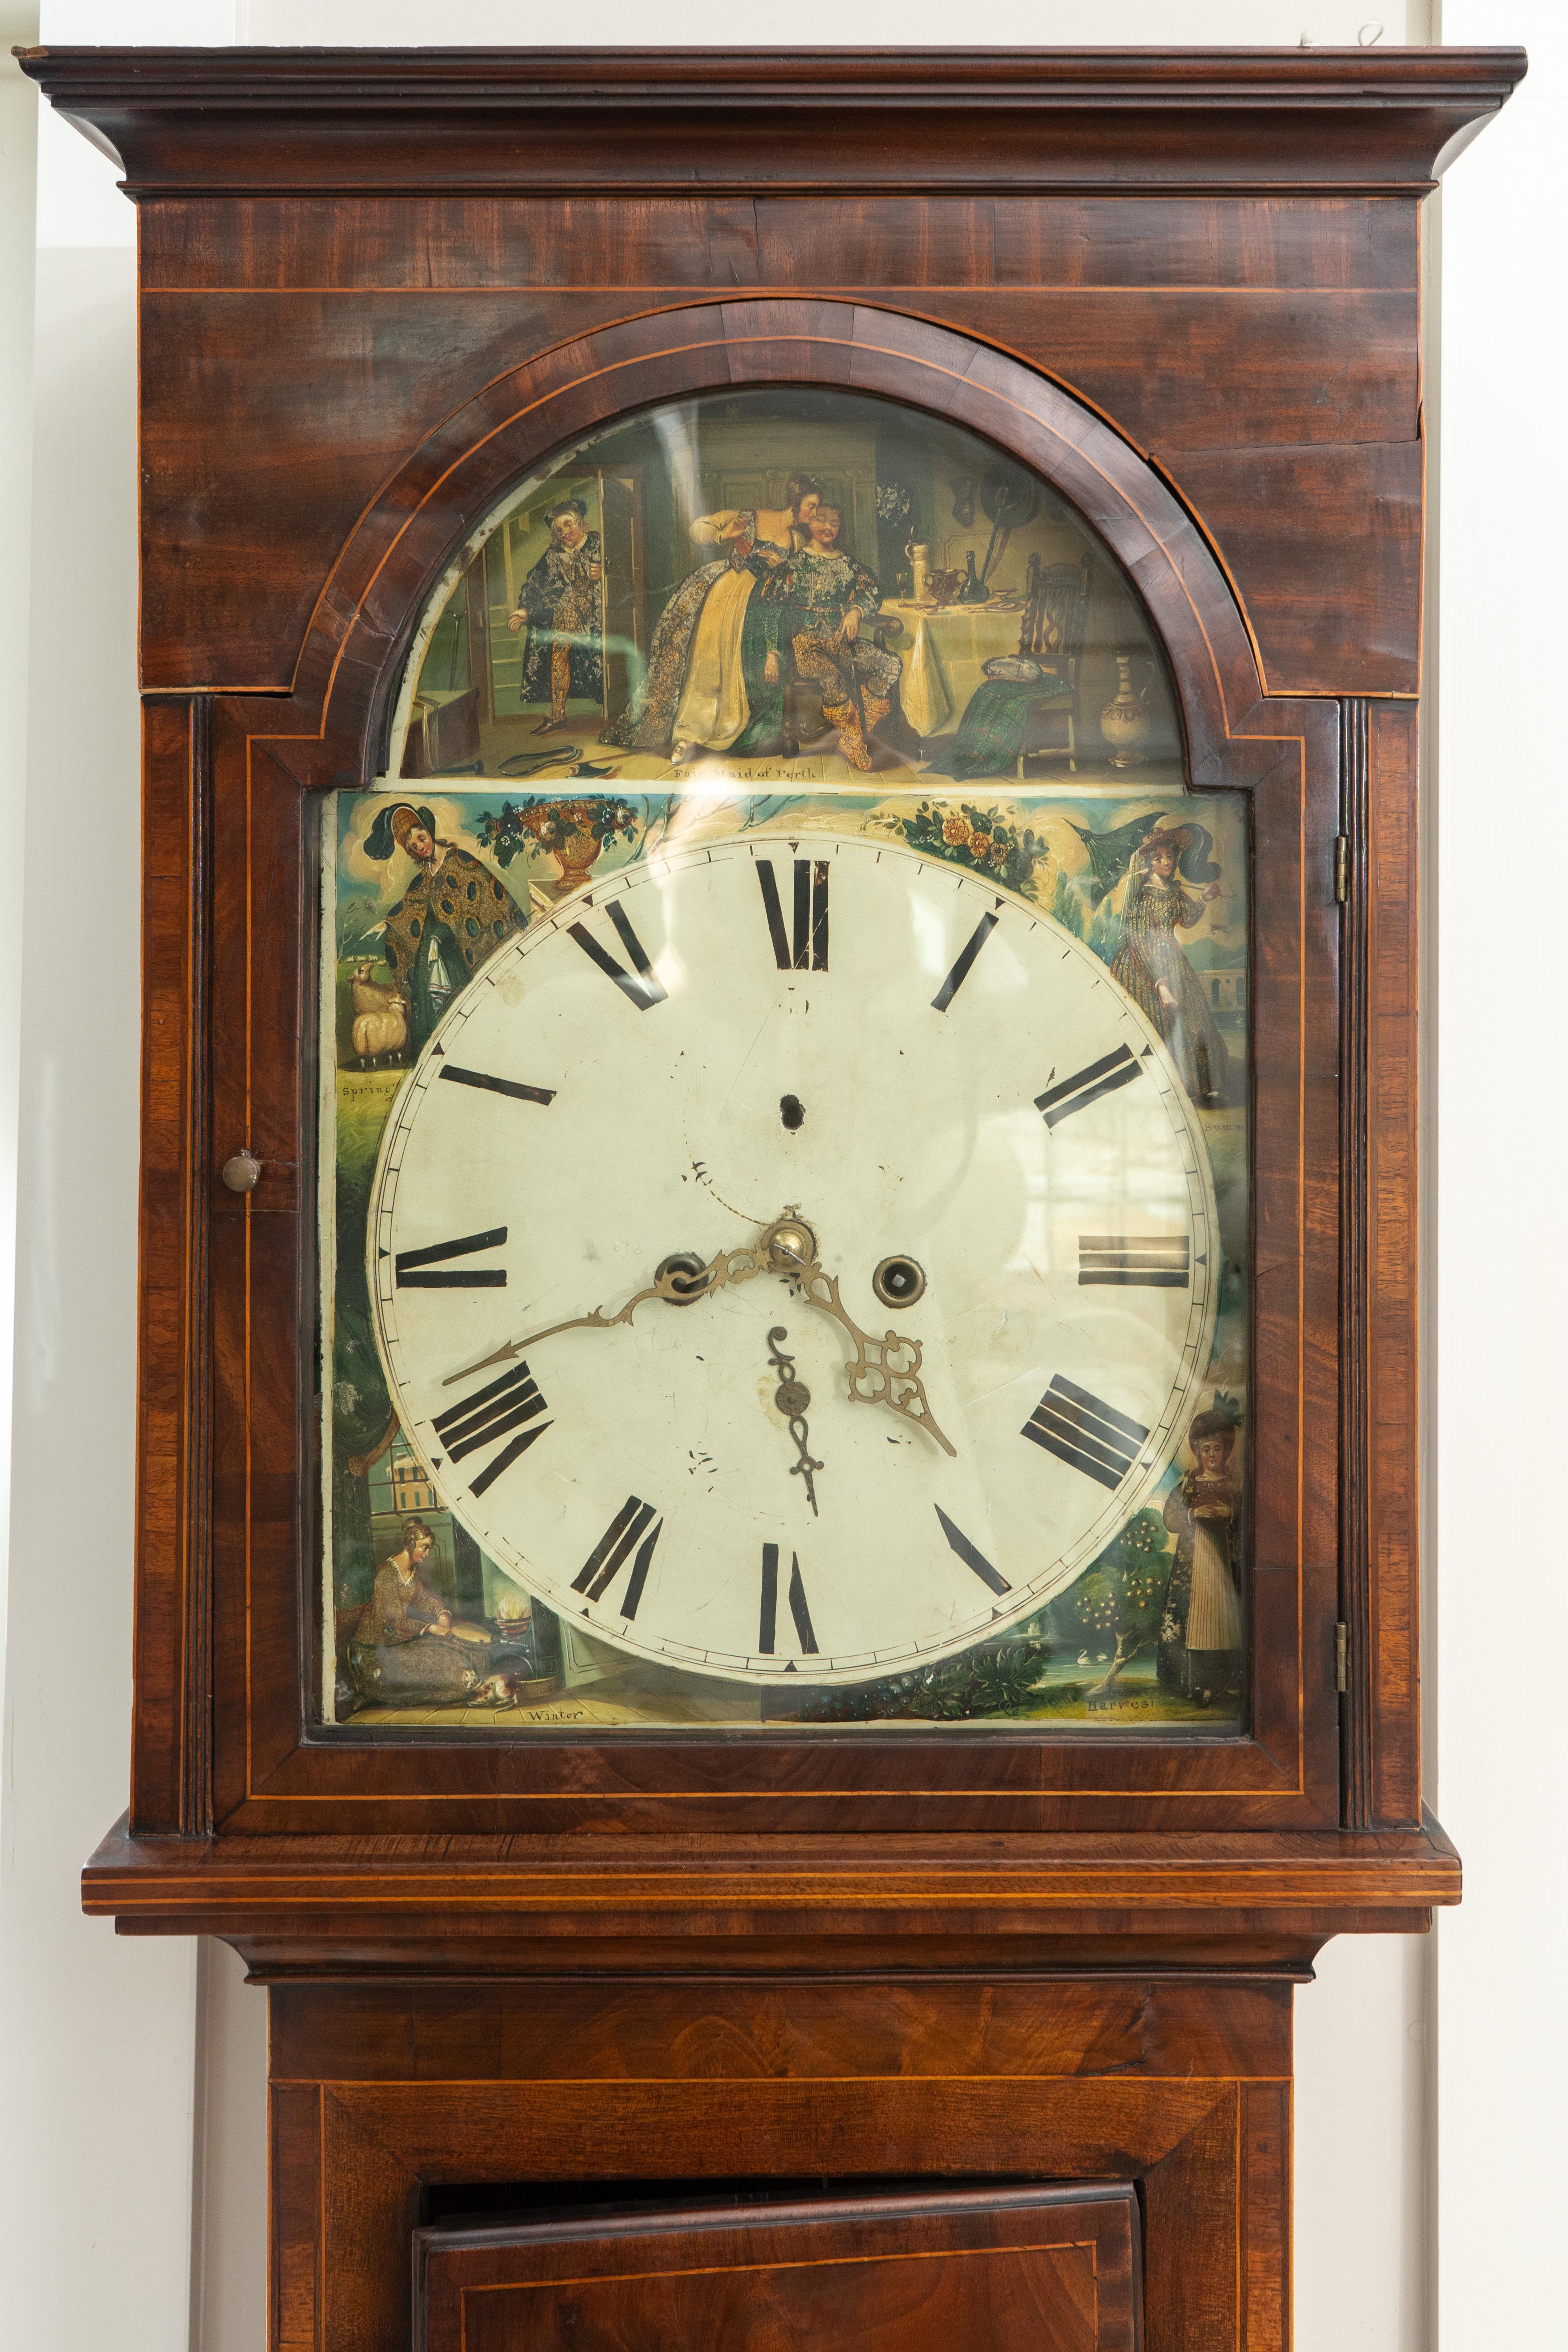 Horloge grand-père écossaise :

Cadran d'horloge peint avec des décors de la Fair Maid of Perth au cours des quatre saisons.

Mesures :  21